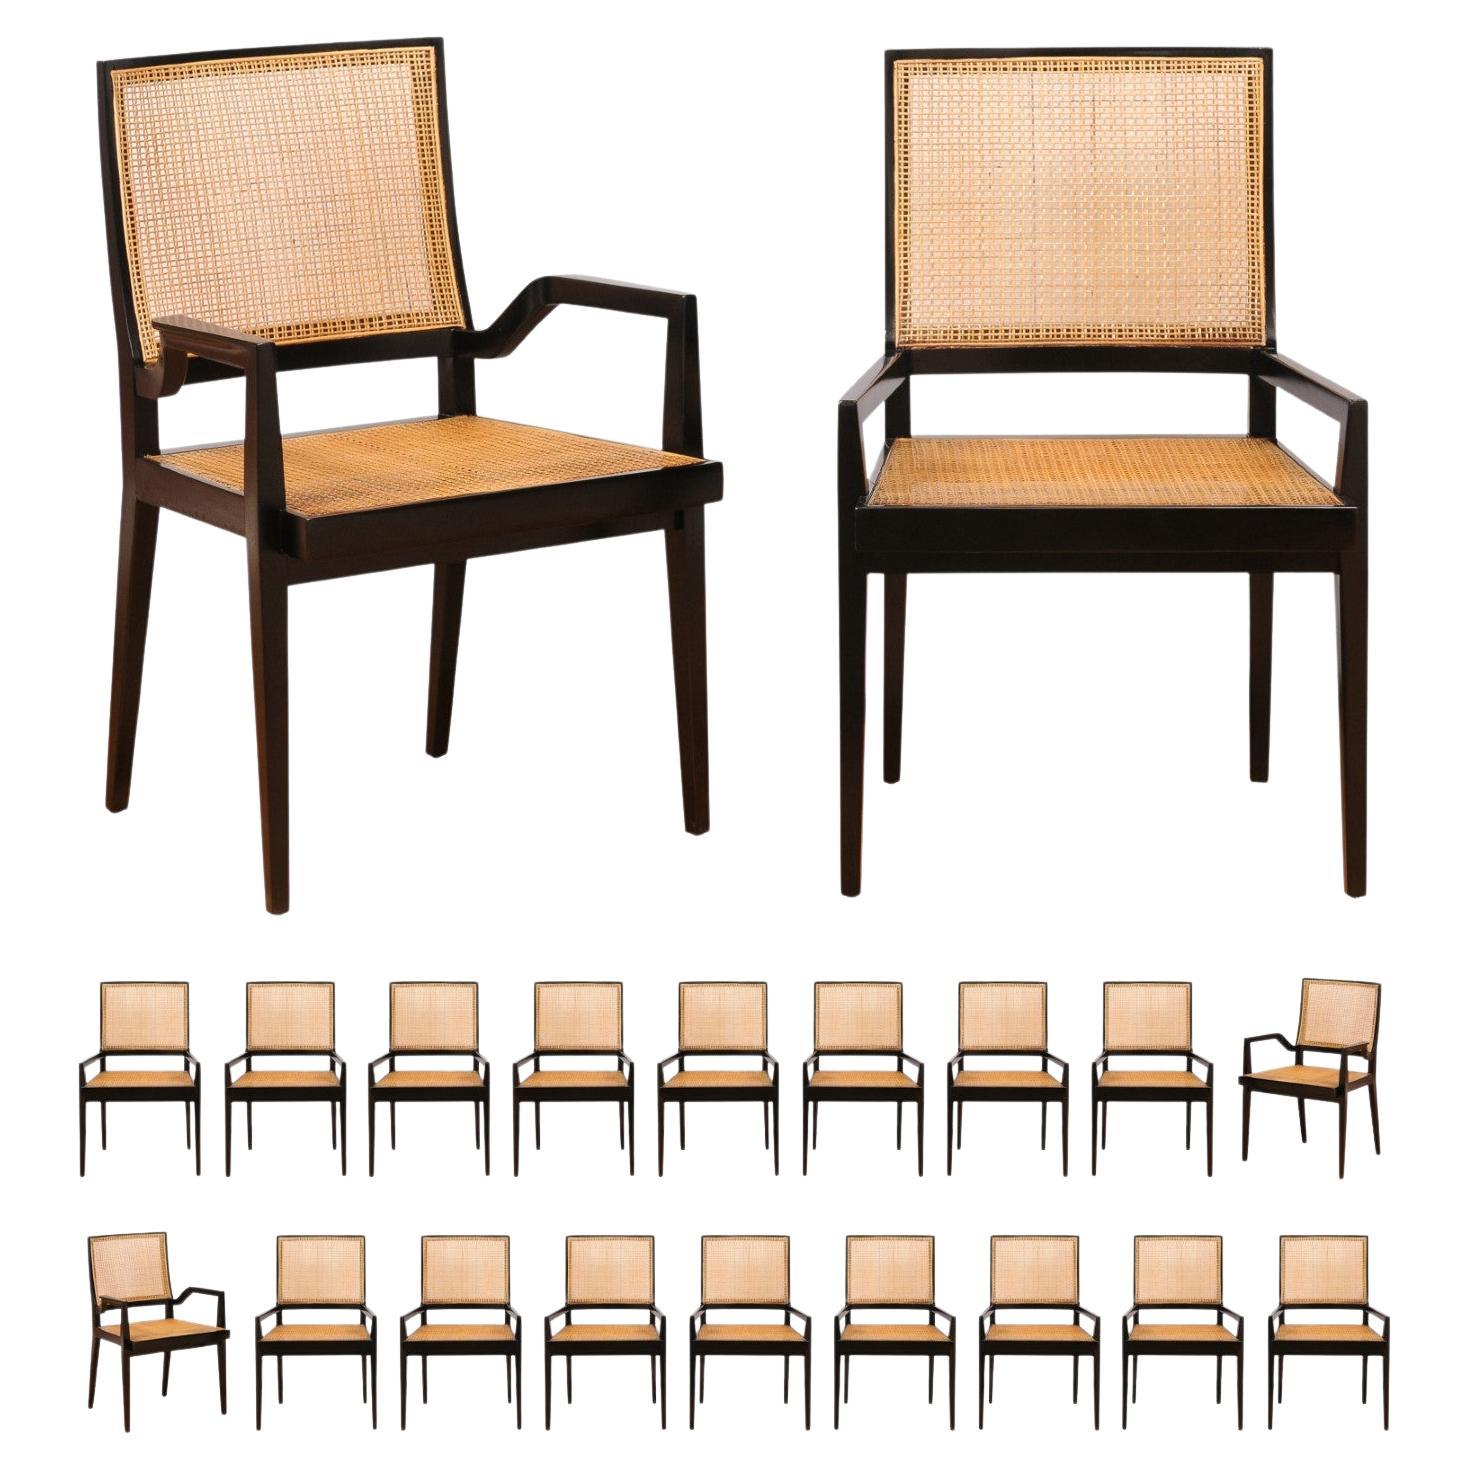 Spektakulärer Satz von 20 eleganten Doppelschilfrohr-Esszimmerstühlen von Michael Taylor